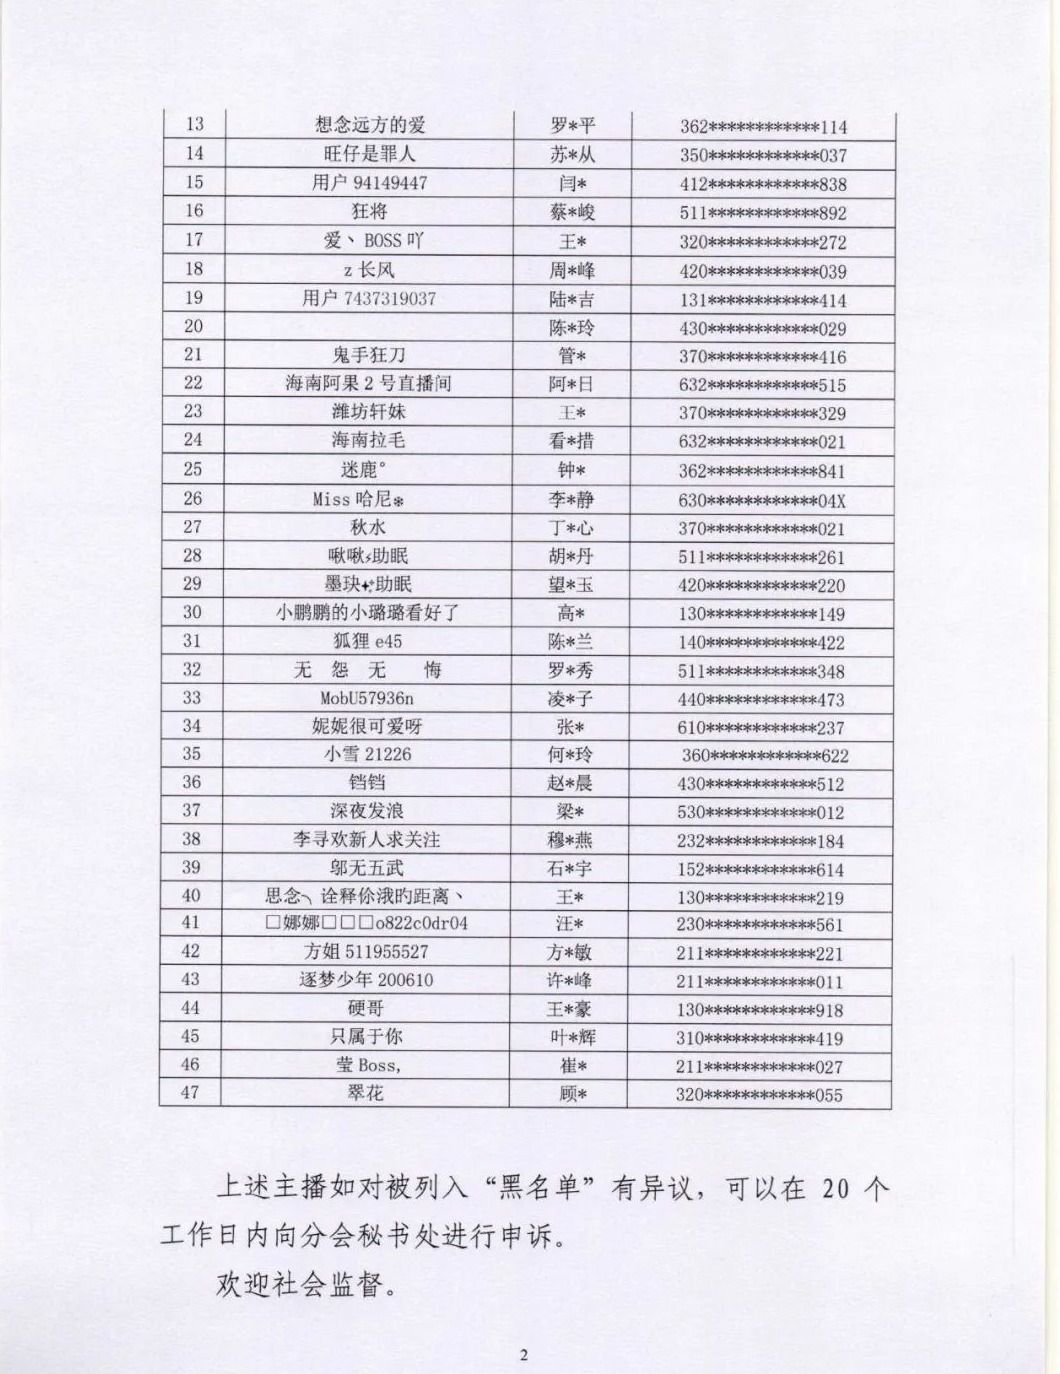 【名单】47名主播被封禁：涉嫌违法违规 封禁期限5年